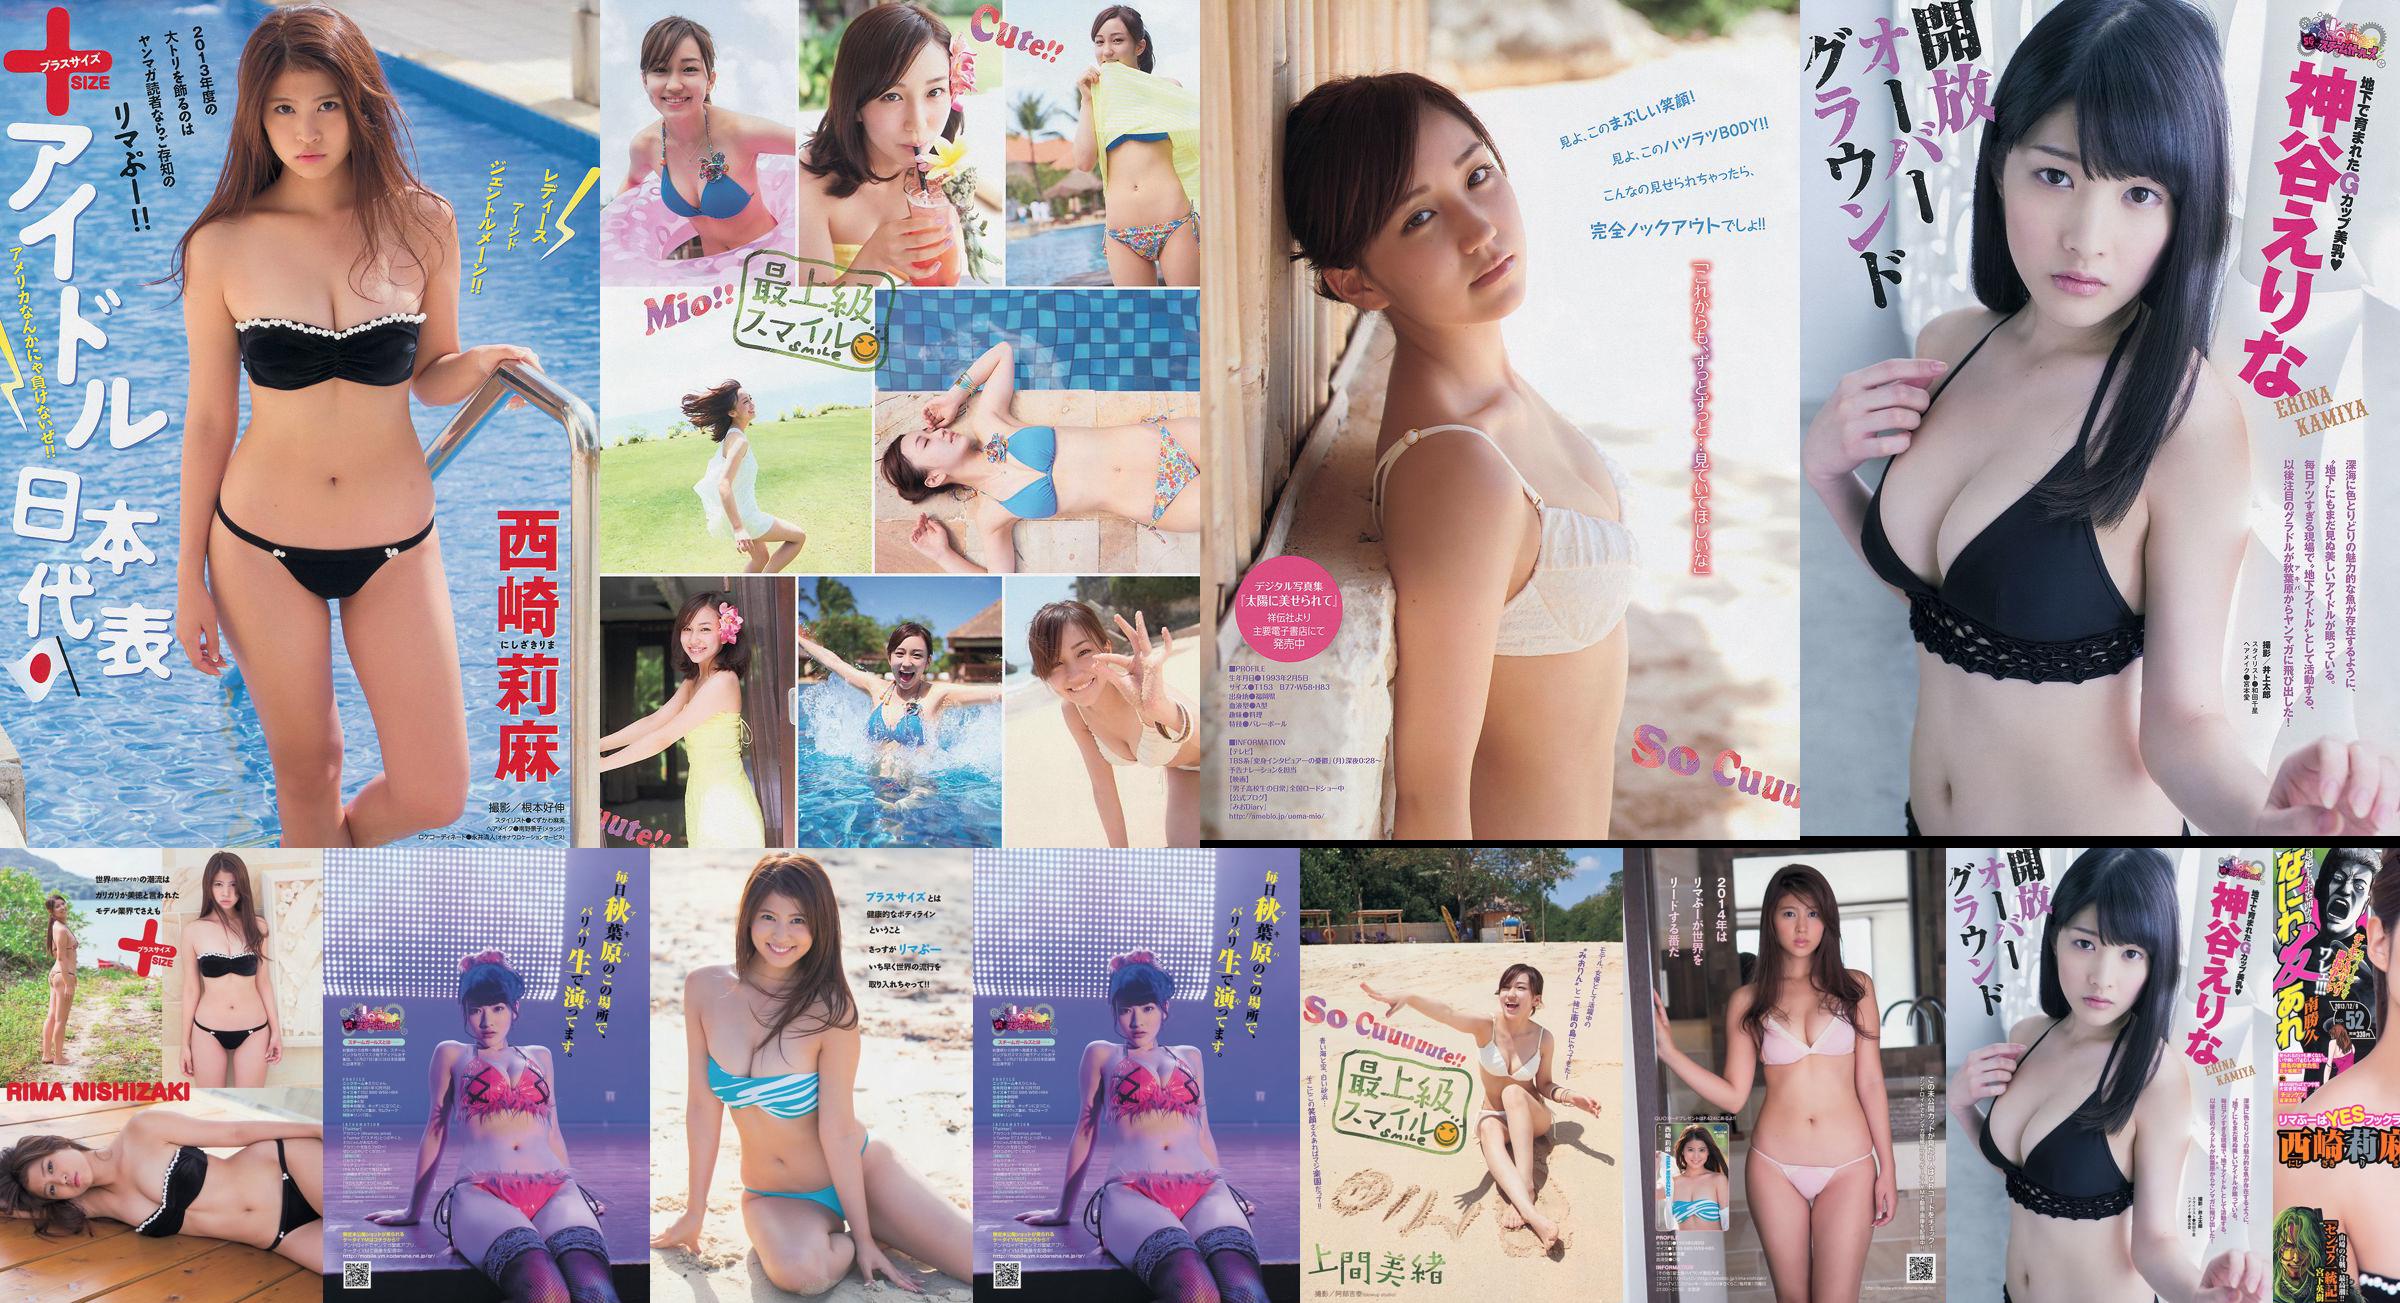 [Young Magazine] Rima Nishizaki Mio Uema Erina Kamiya 2013 No.52 Foto Moshi No.8dee64 Pagina 2